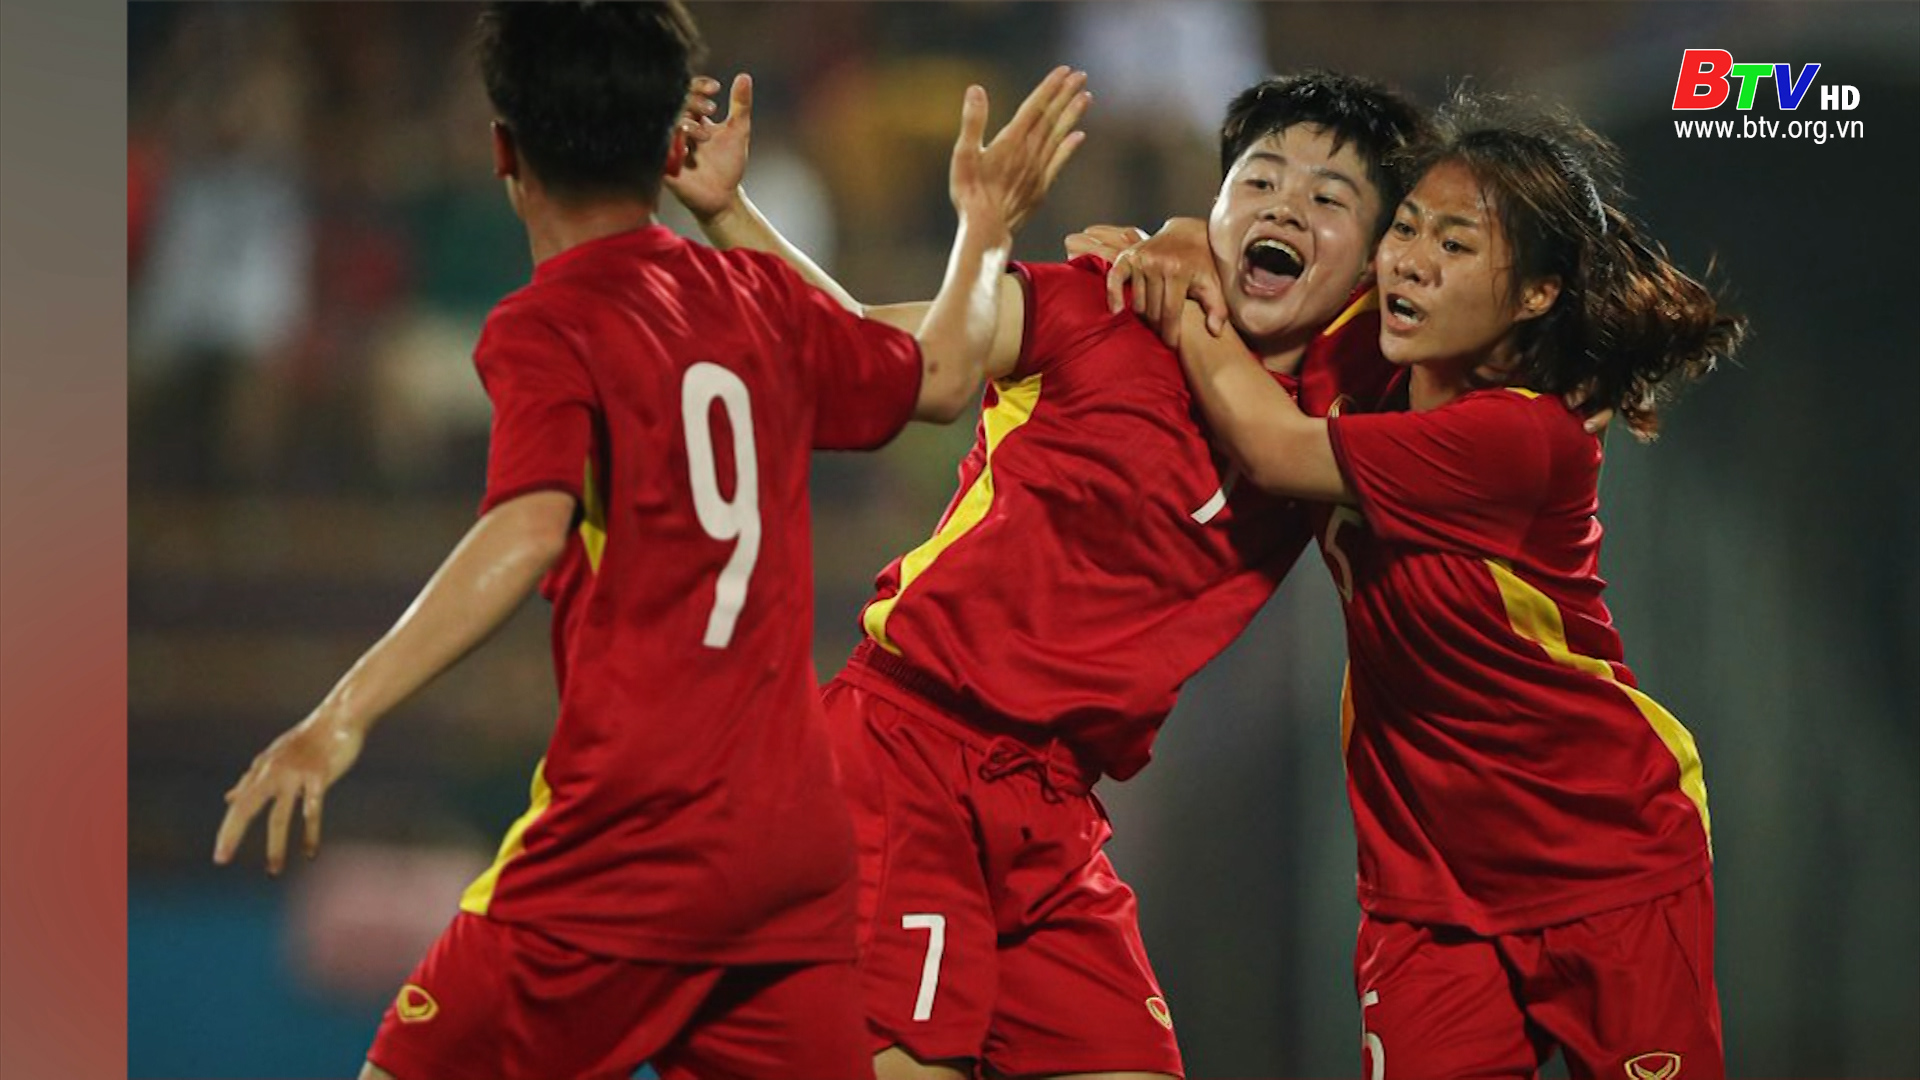 Đội tuyển Futsal Việt Nam đến Paraguay tập huấn